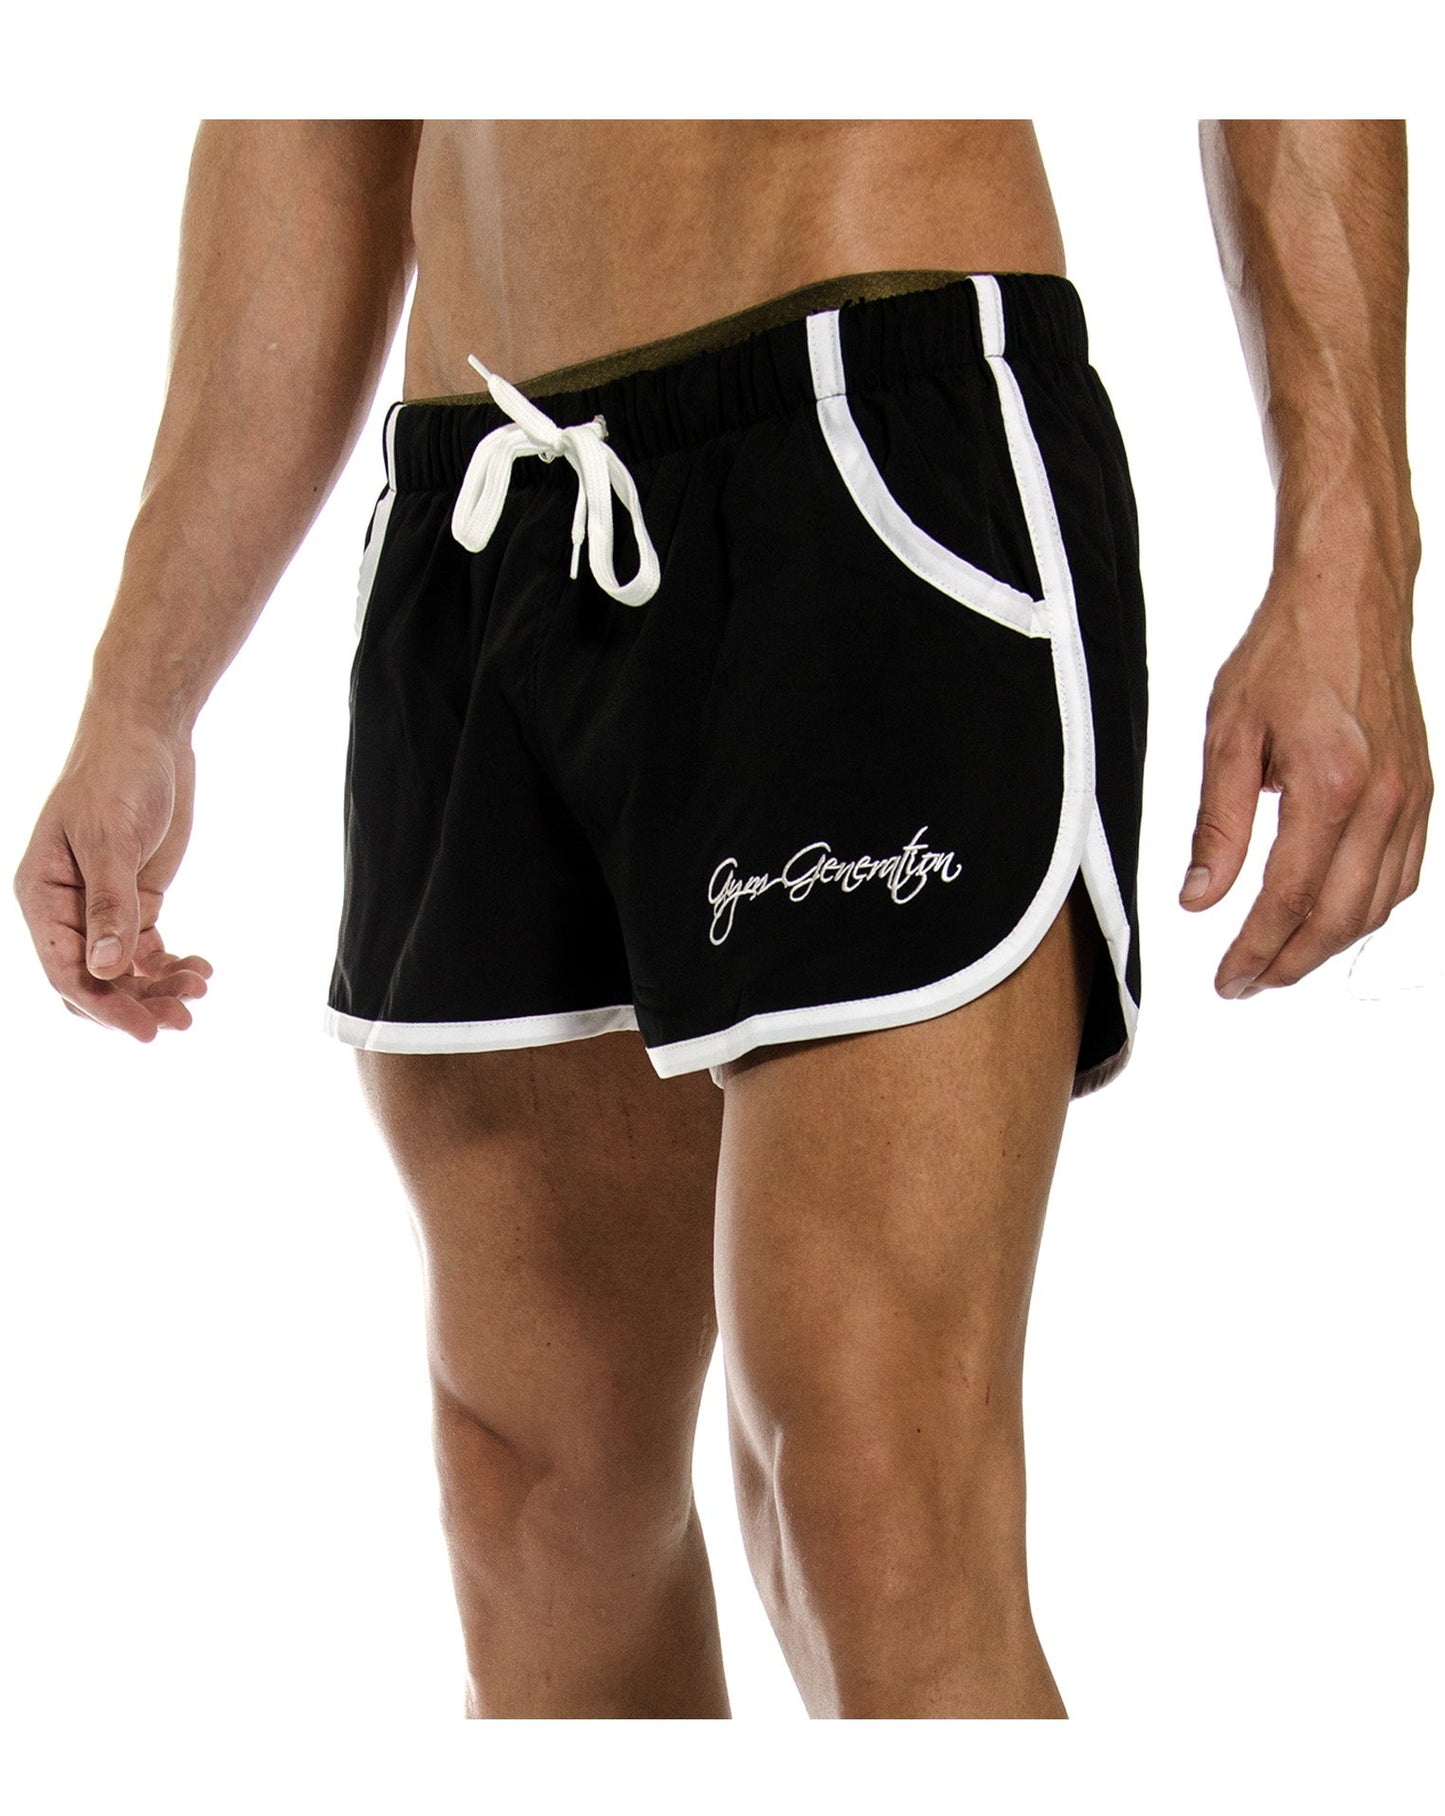 Aesthetic Gym Shorts - Schwarz - Gym Generation®--www.gymgeneration.ch